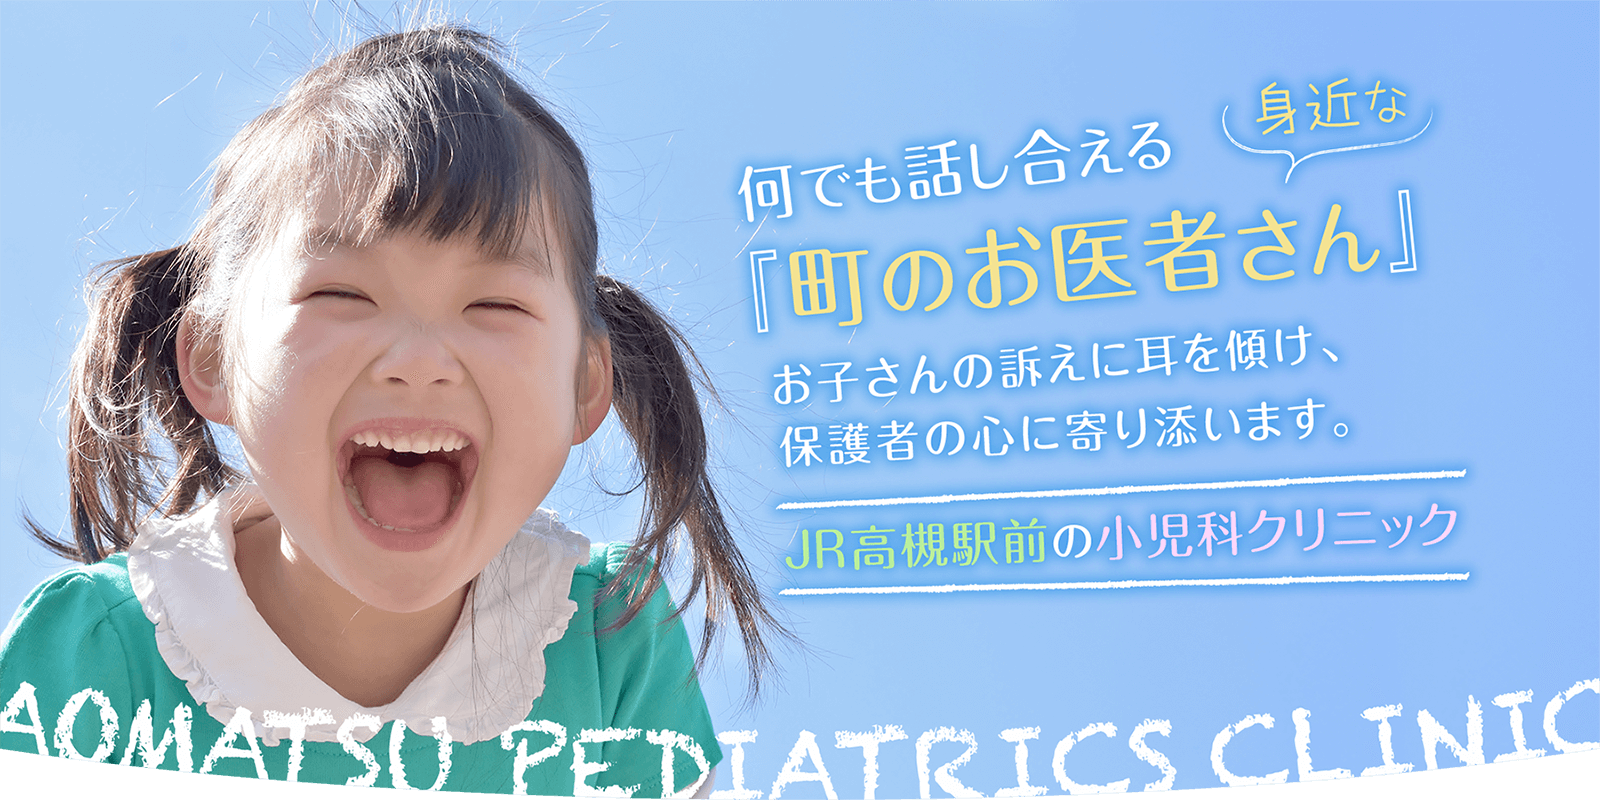 何でも話し合える身近な『町のお医者さん』。お子さんの訴えに耳を傾け、保護者の心に寄り添います。高槻市の小児科『あおまつ小児科クリニック』です。お車でもご来院いただけます。日本小児科学会専門医・指導医が一般小児診療、小児予防接種、乳幼児健診などに対応いたします。